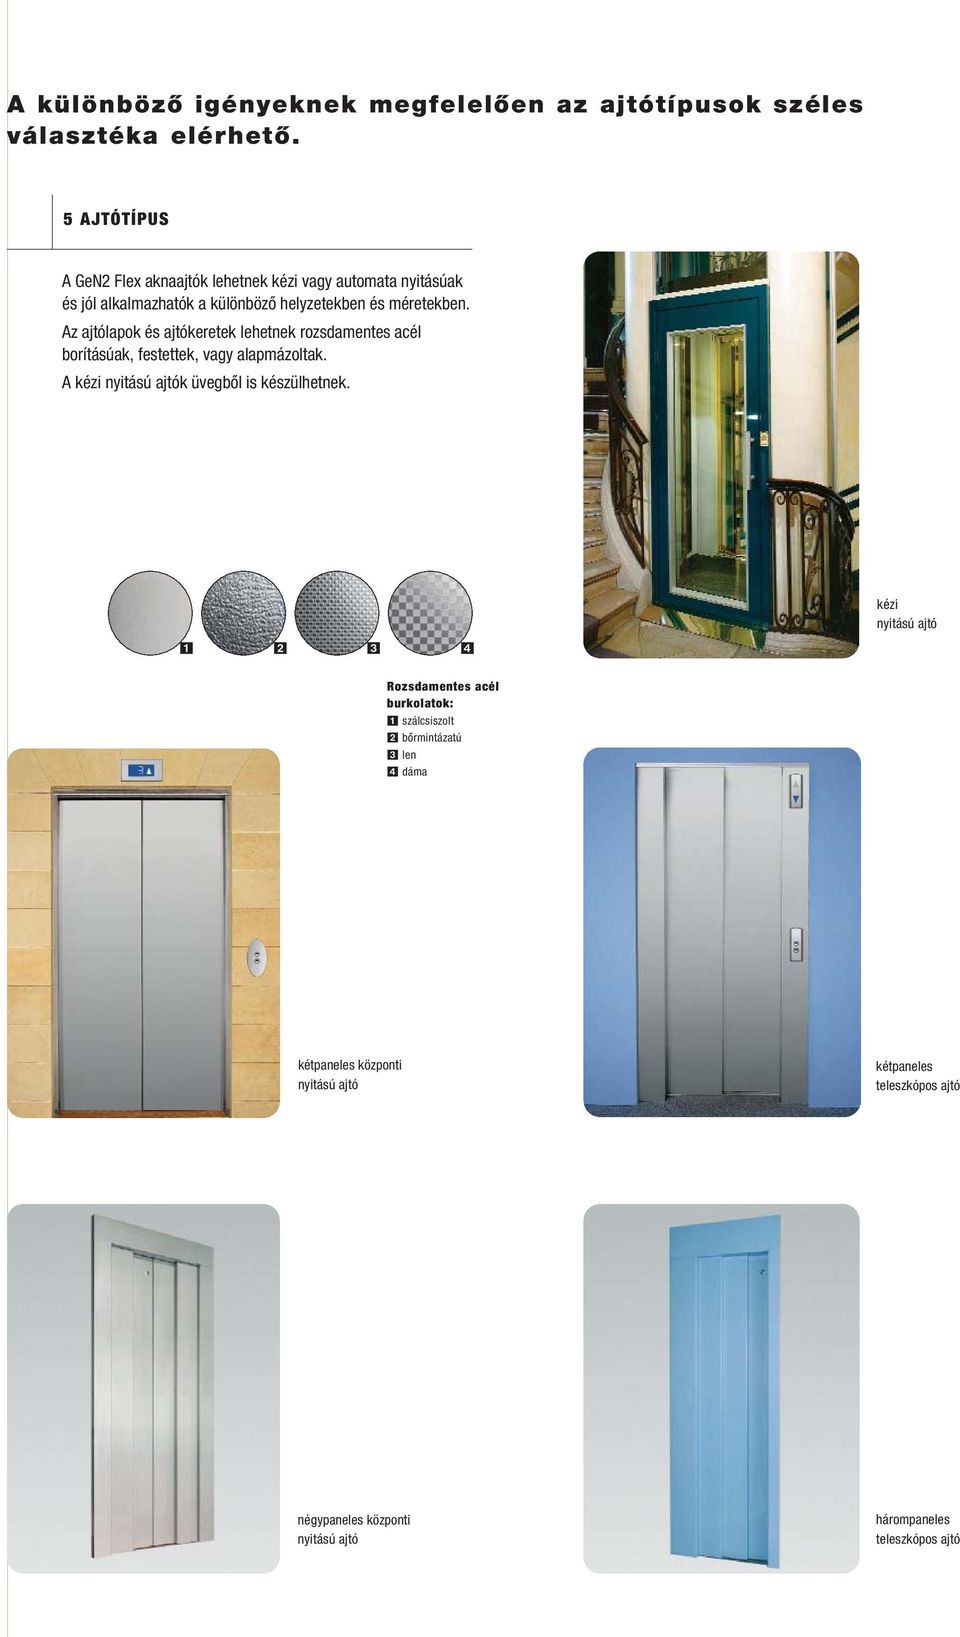 Az ajtólapok és ajtókeretek lehetnek rozsdamentes acél borításúak, festettek, vagy alapmázoltak. A kézi nyitású ajtók üvegbõl is készülhetnek.